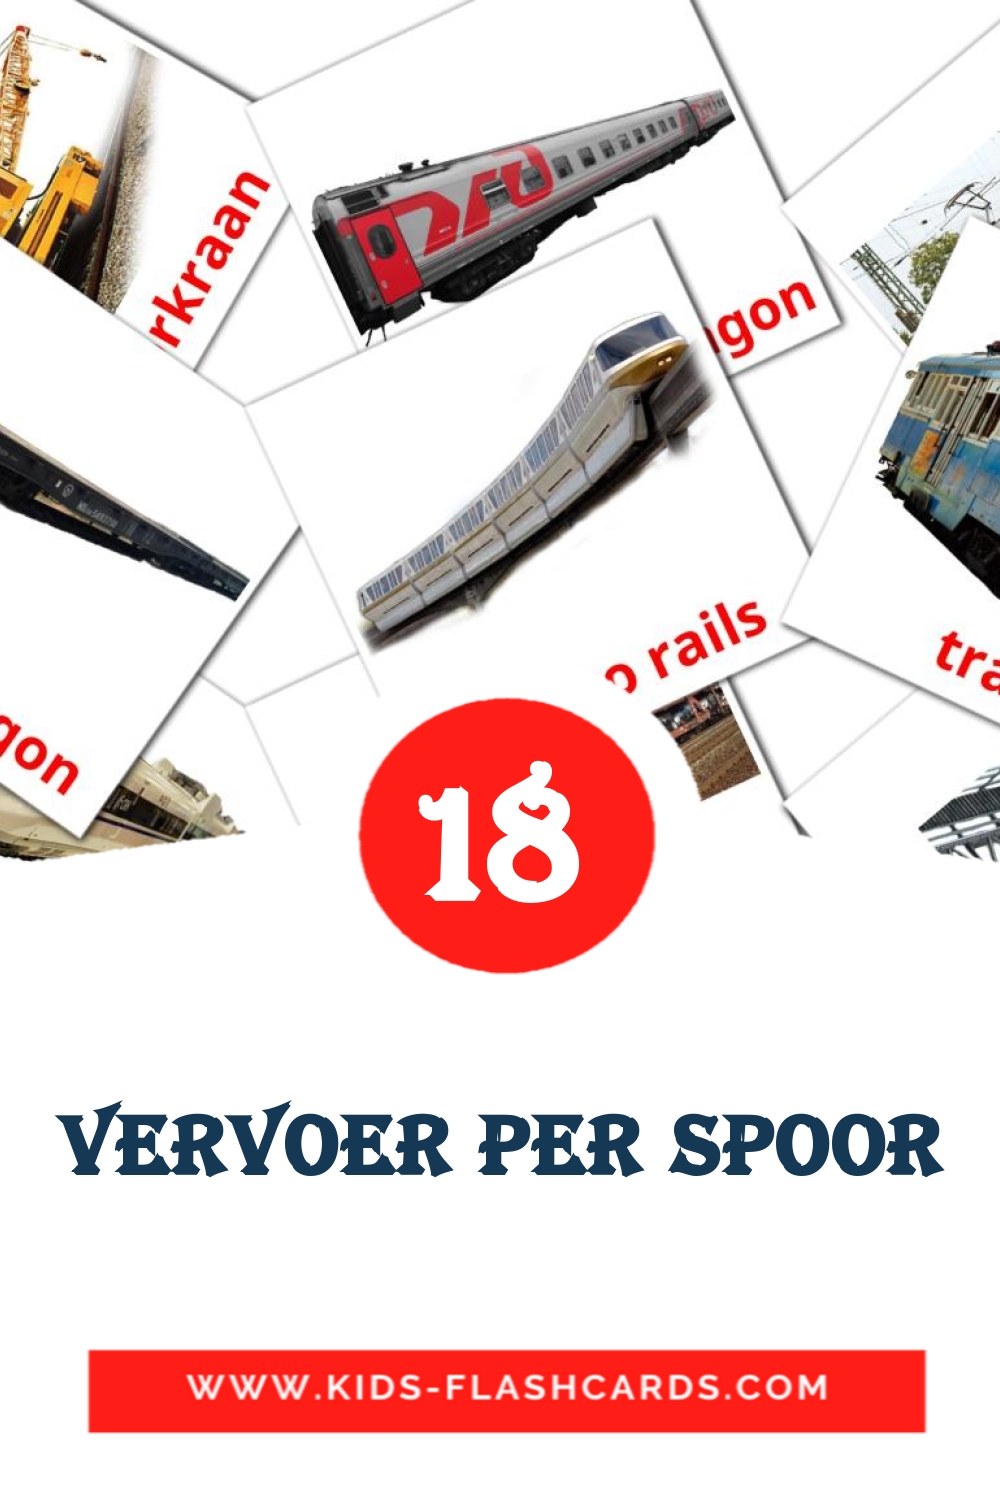 Vervoer per spoor на нидерландcком для Детского Сада (18 карточек)